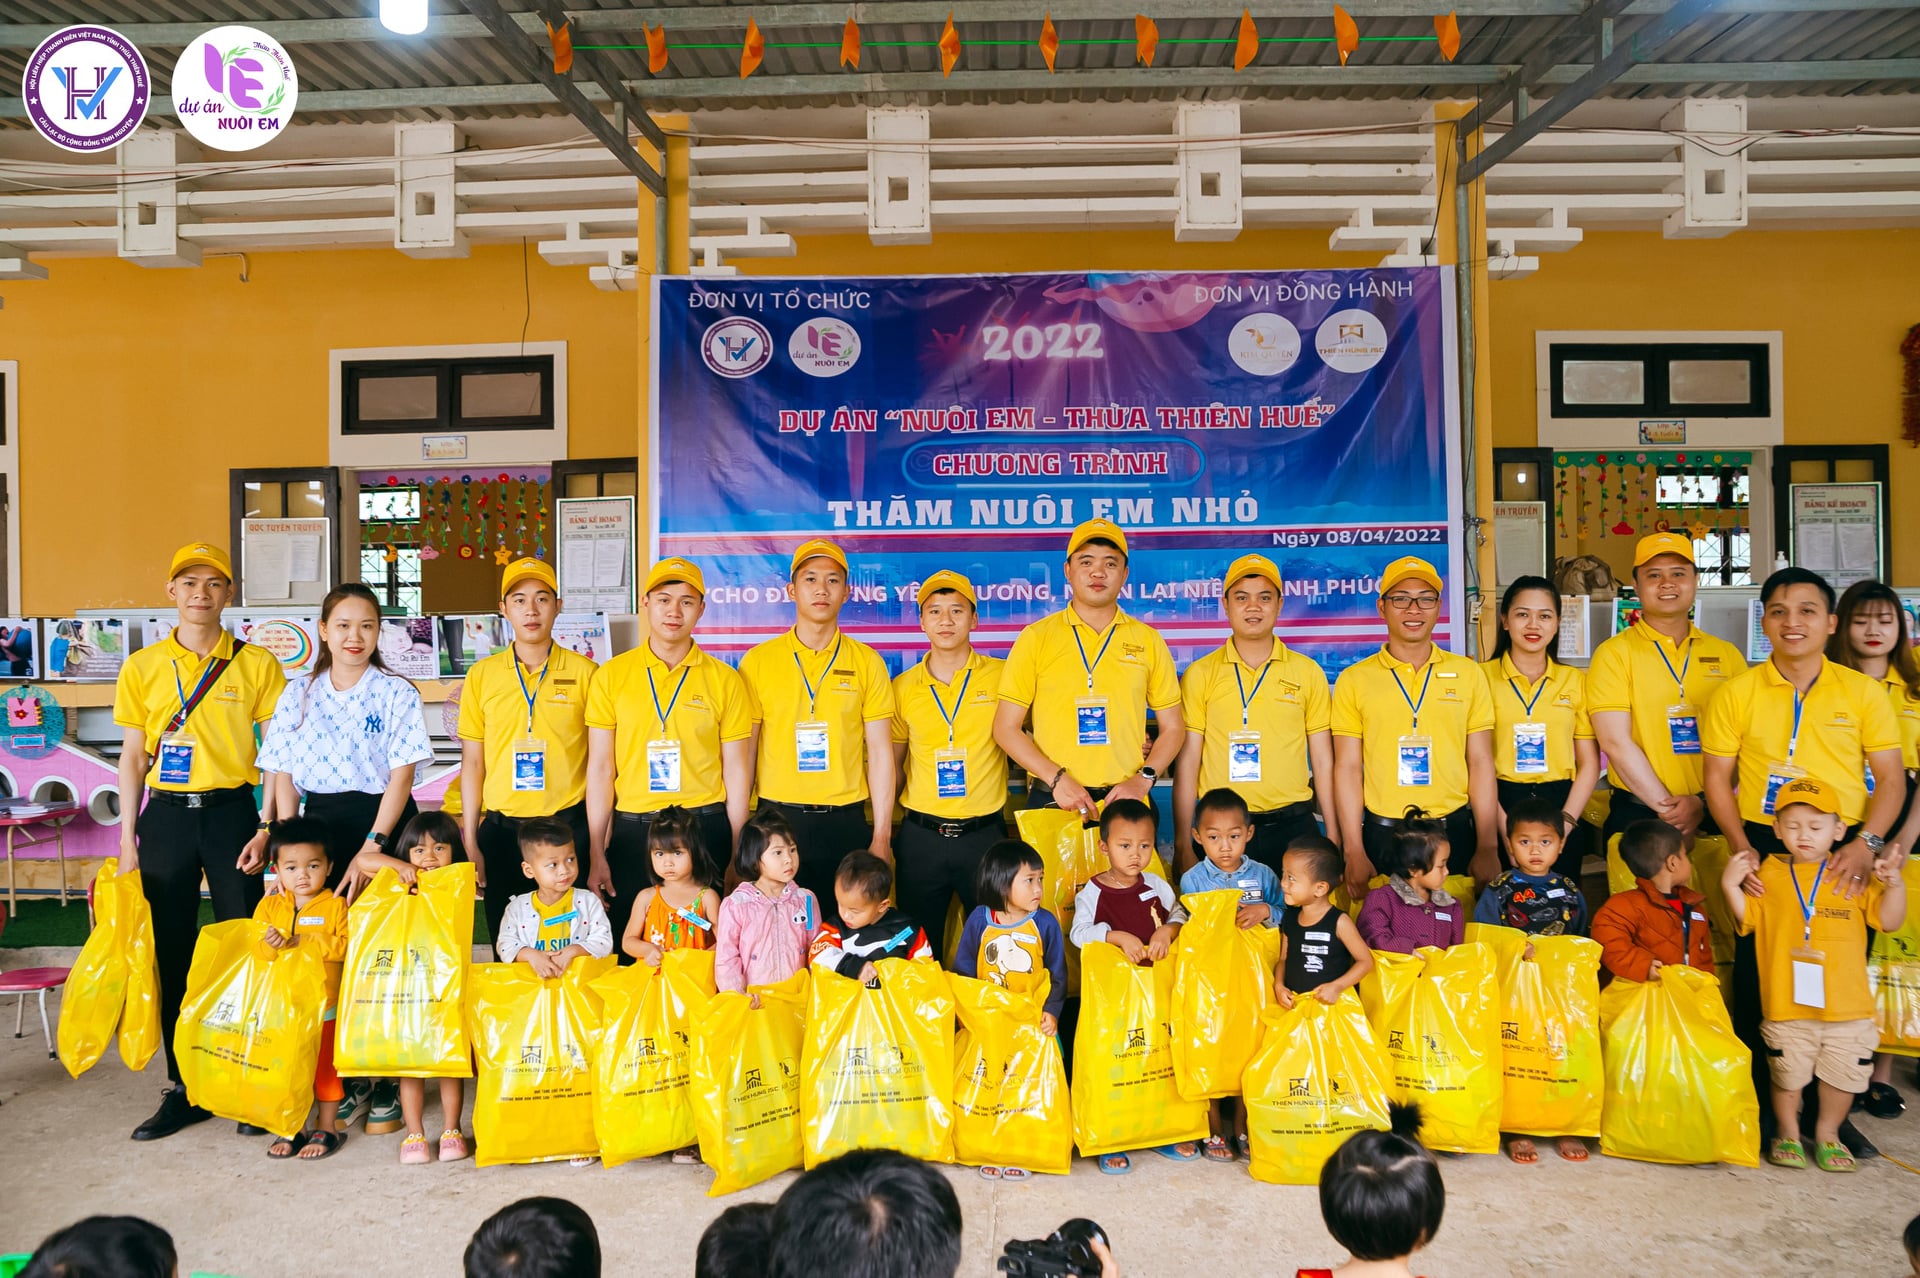 Với chỉ 150.000 đồng/tháng, hàng triệu người Việt đang “góp gạo” cùng dự án thiện nguyện này để mang đến những bữa cơm no cho hơn 4.000 trẻ vùng cao xứ Huế - ảnh 4